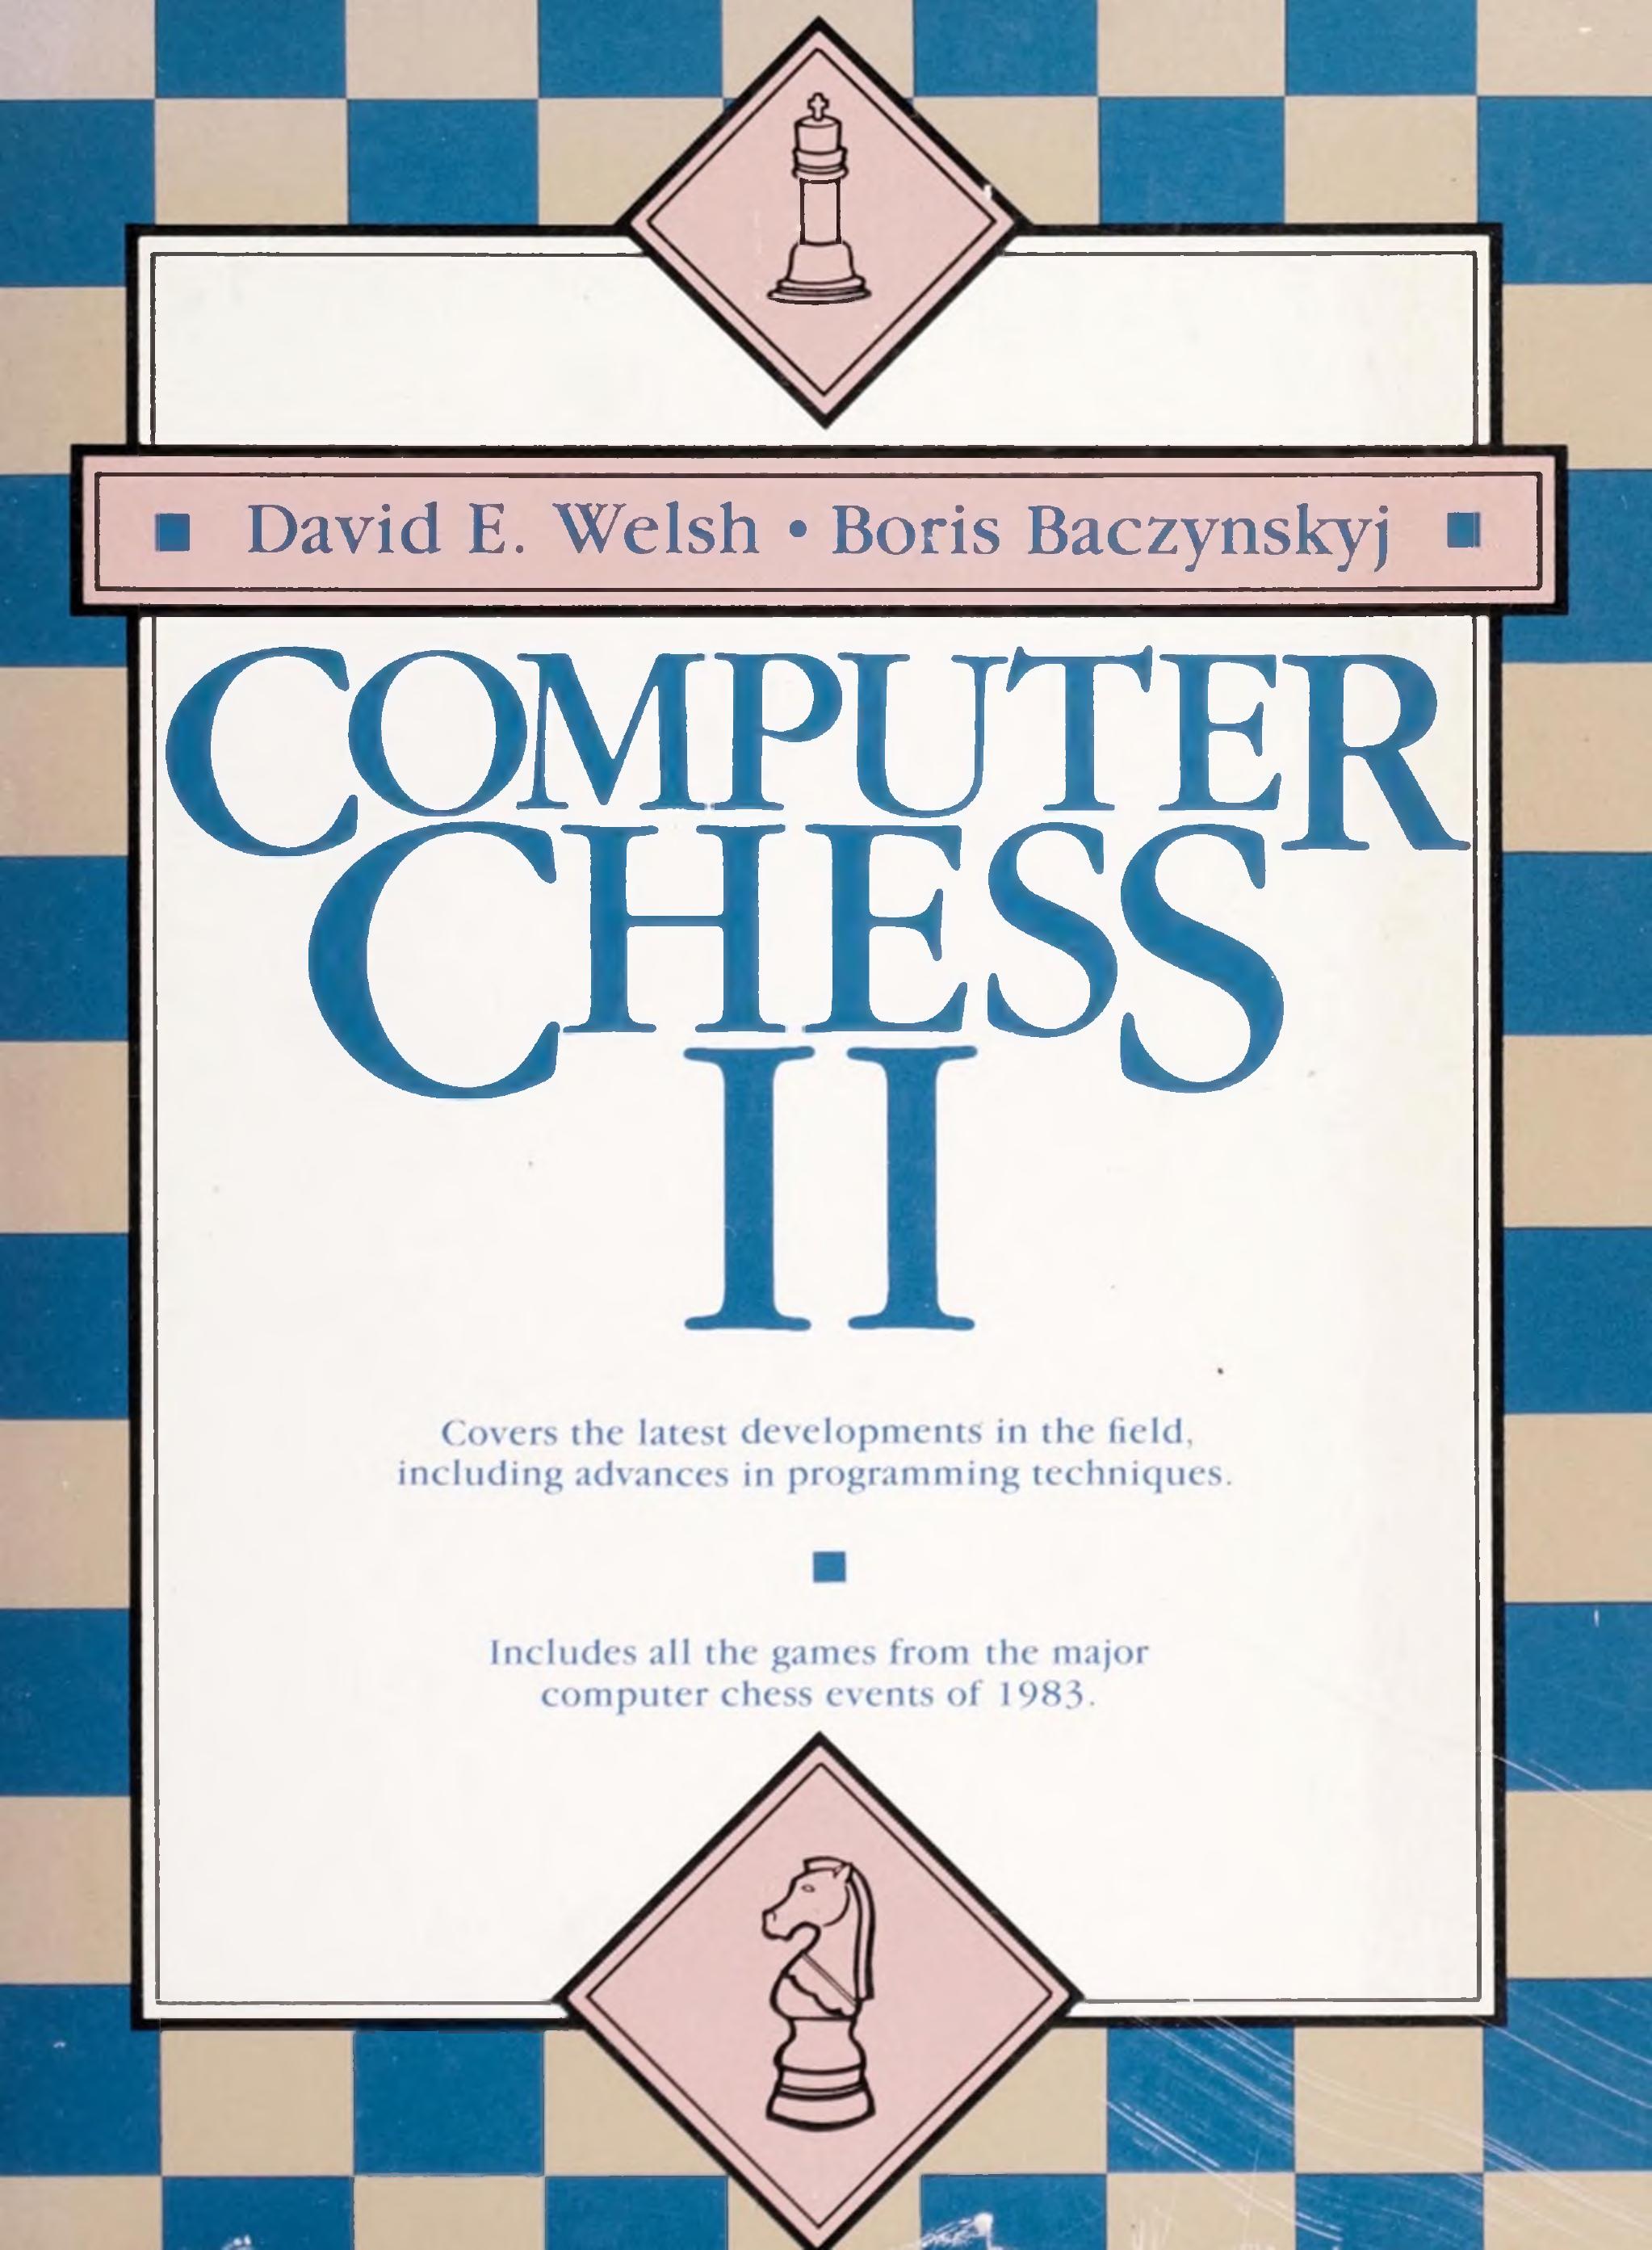 Computer chess II by David E. Welsh Boris Baczynskyj